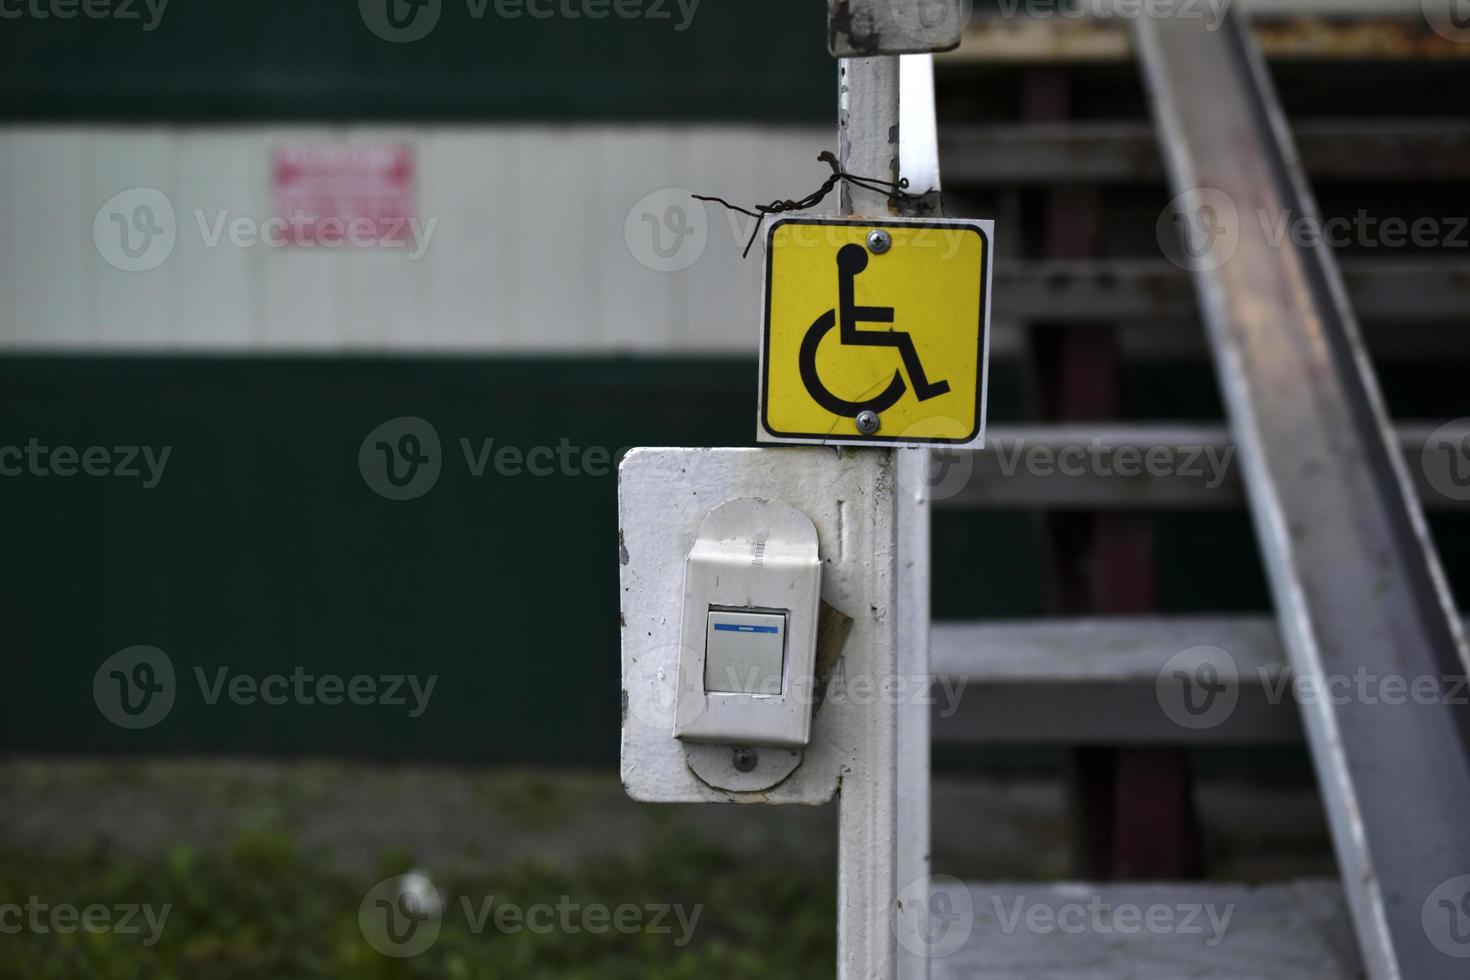 ett inkluderande förhållningssätt till byggnaden och handikappskylten. en uppmaning att ringa efter hjälp till funktionshindrade. foto